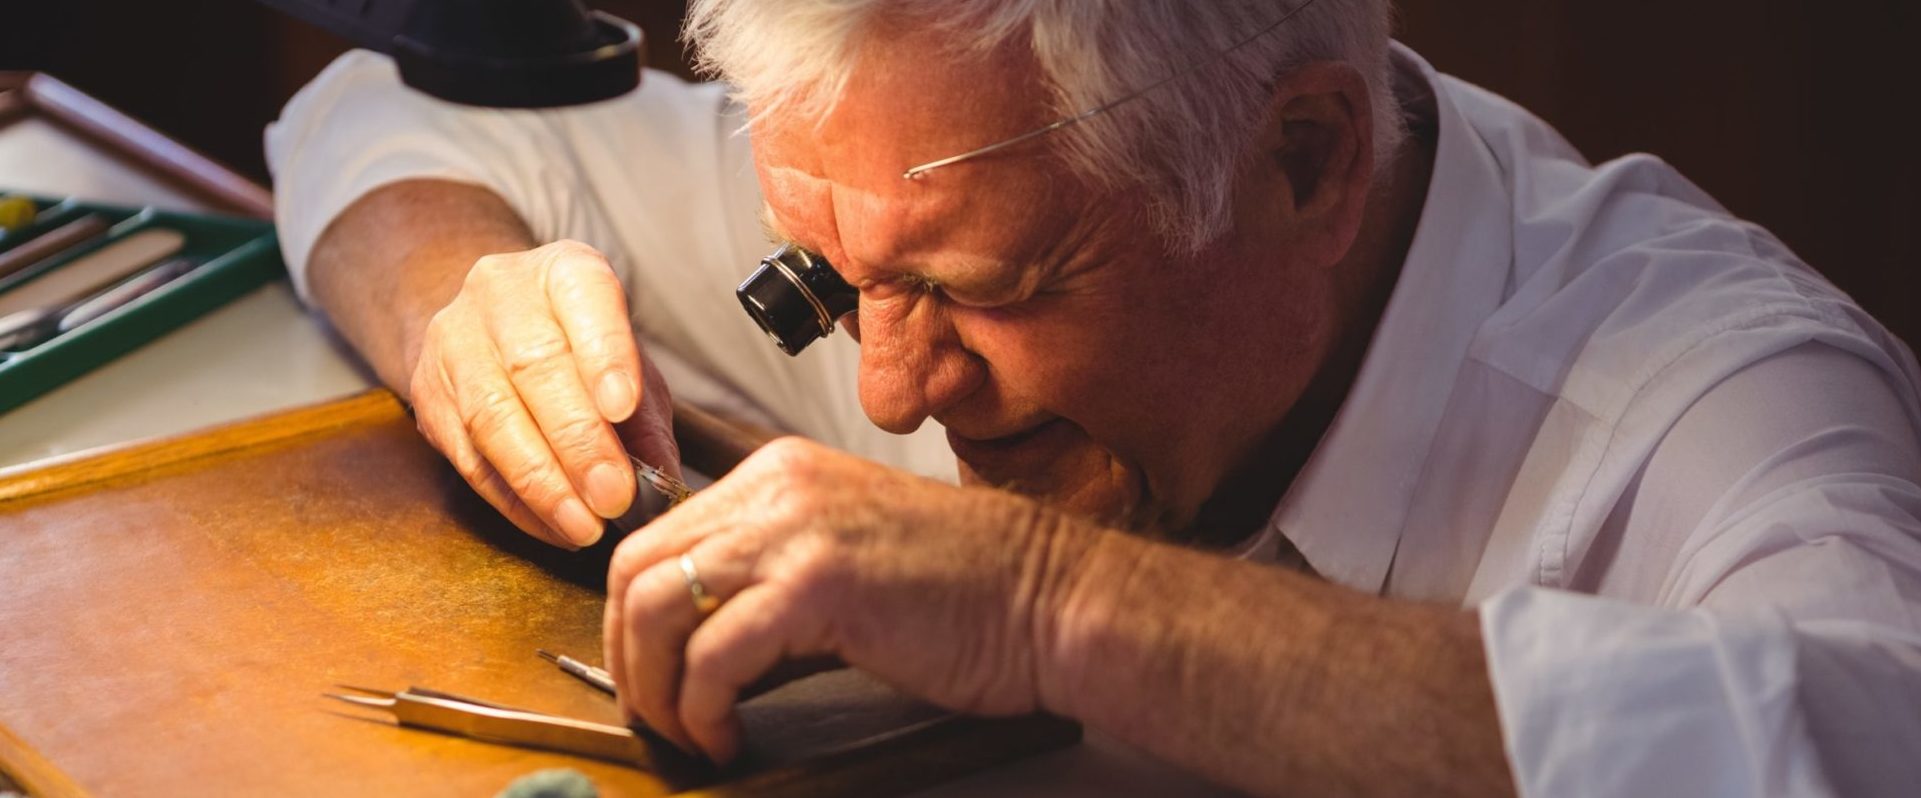 Erfahrener Uhrmacher repariert alte GUB Glashütte Uhr